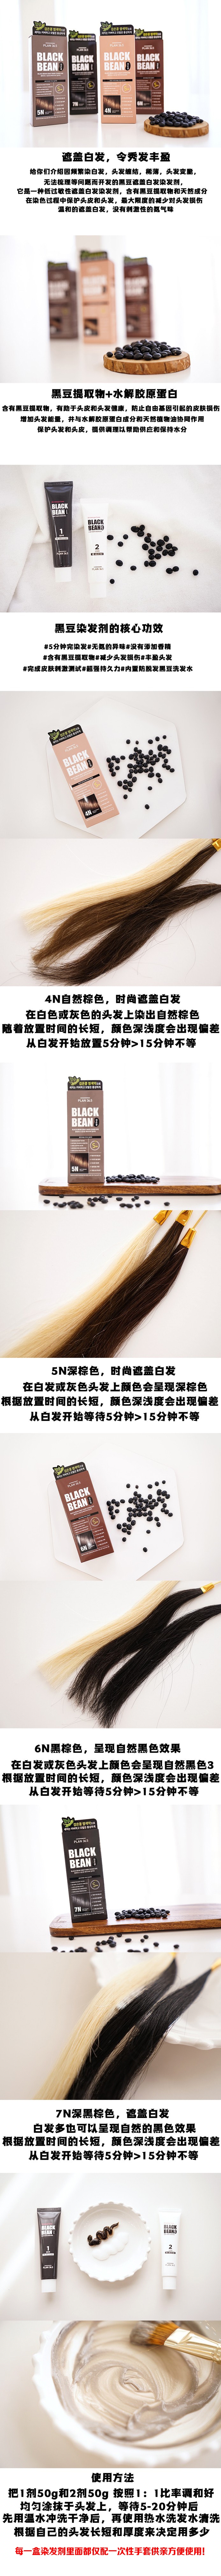 韓國 【黑豆染髮】 Plan 36.5 黑豆 防脫髮滋潤染髮劑 可染白髮 #5N 天然棕